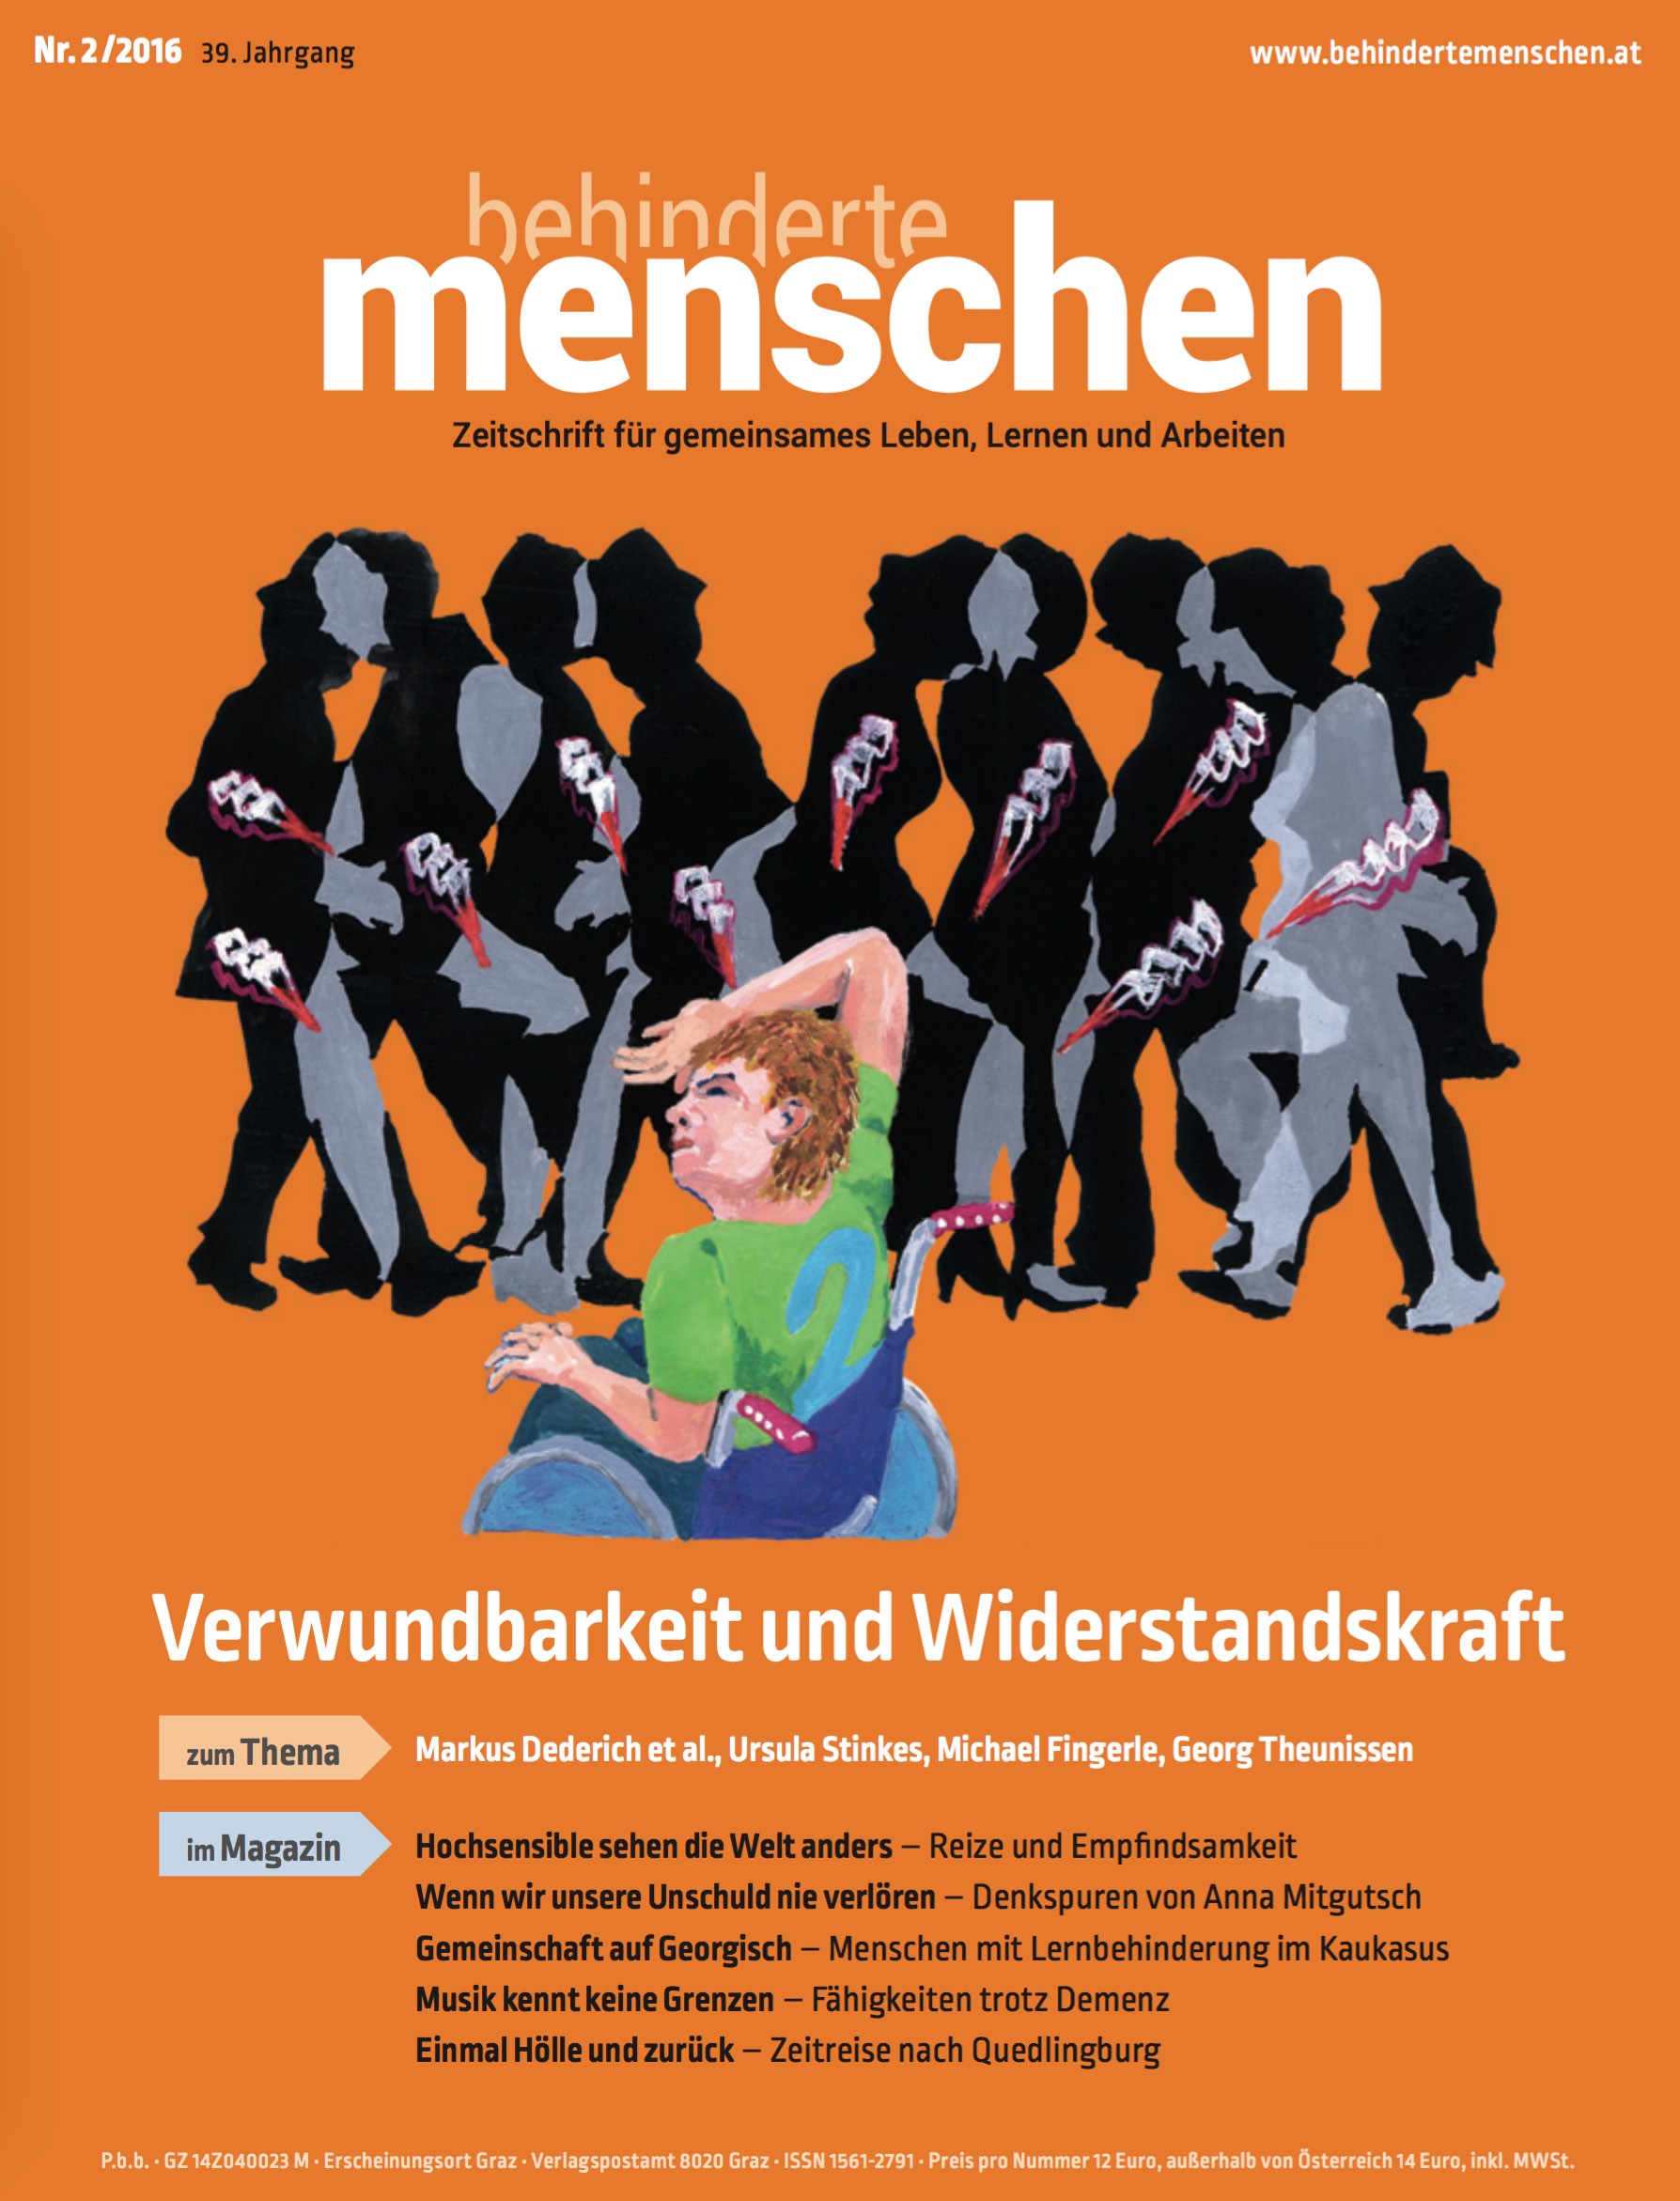 Titelbild der Zeitschrift BEHINDERTE MENSCHEN, Ausgabe 2/2016 "Verwundbarkeit und Widerstandskraft"